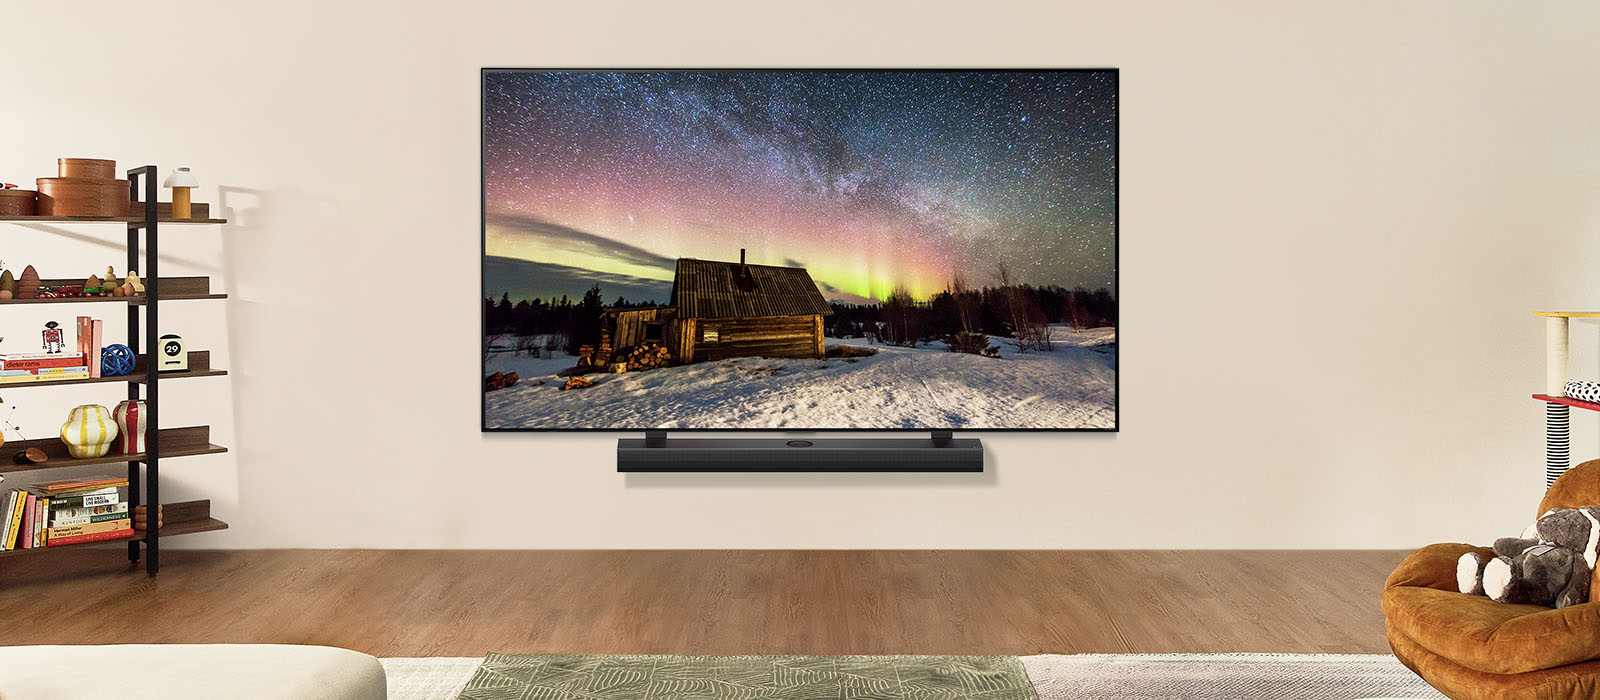 白天時間位於現代客廳空間的 LG TV 和 LG Soundbar。極光螢幕影像隨著理想亮度顯示。